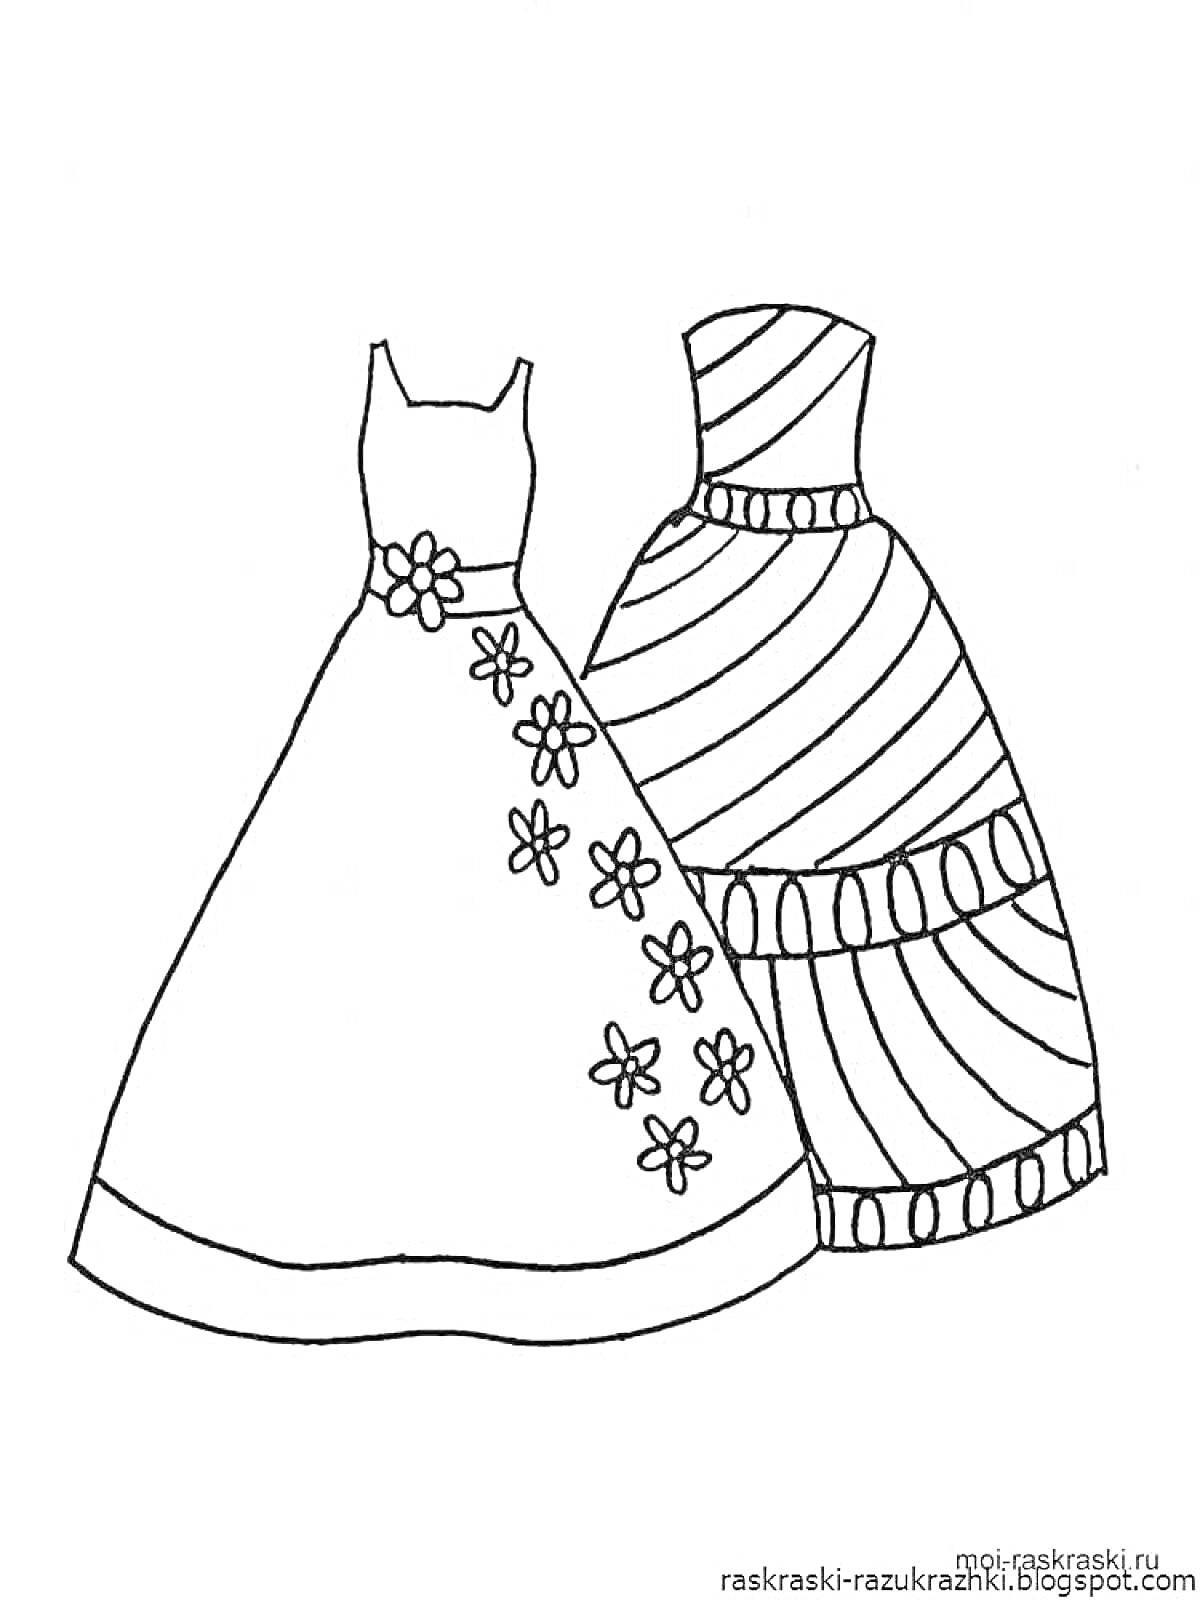 Раскраска Два платья: одно платье с цветочным узором и другое платье с горизонтальными полосами